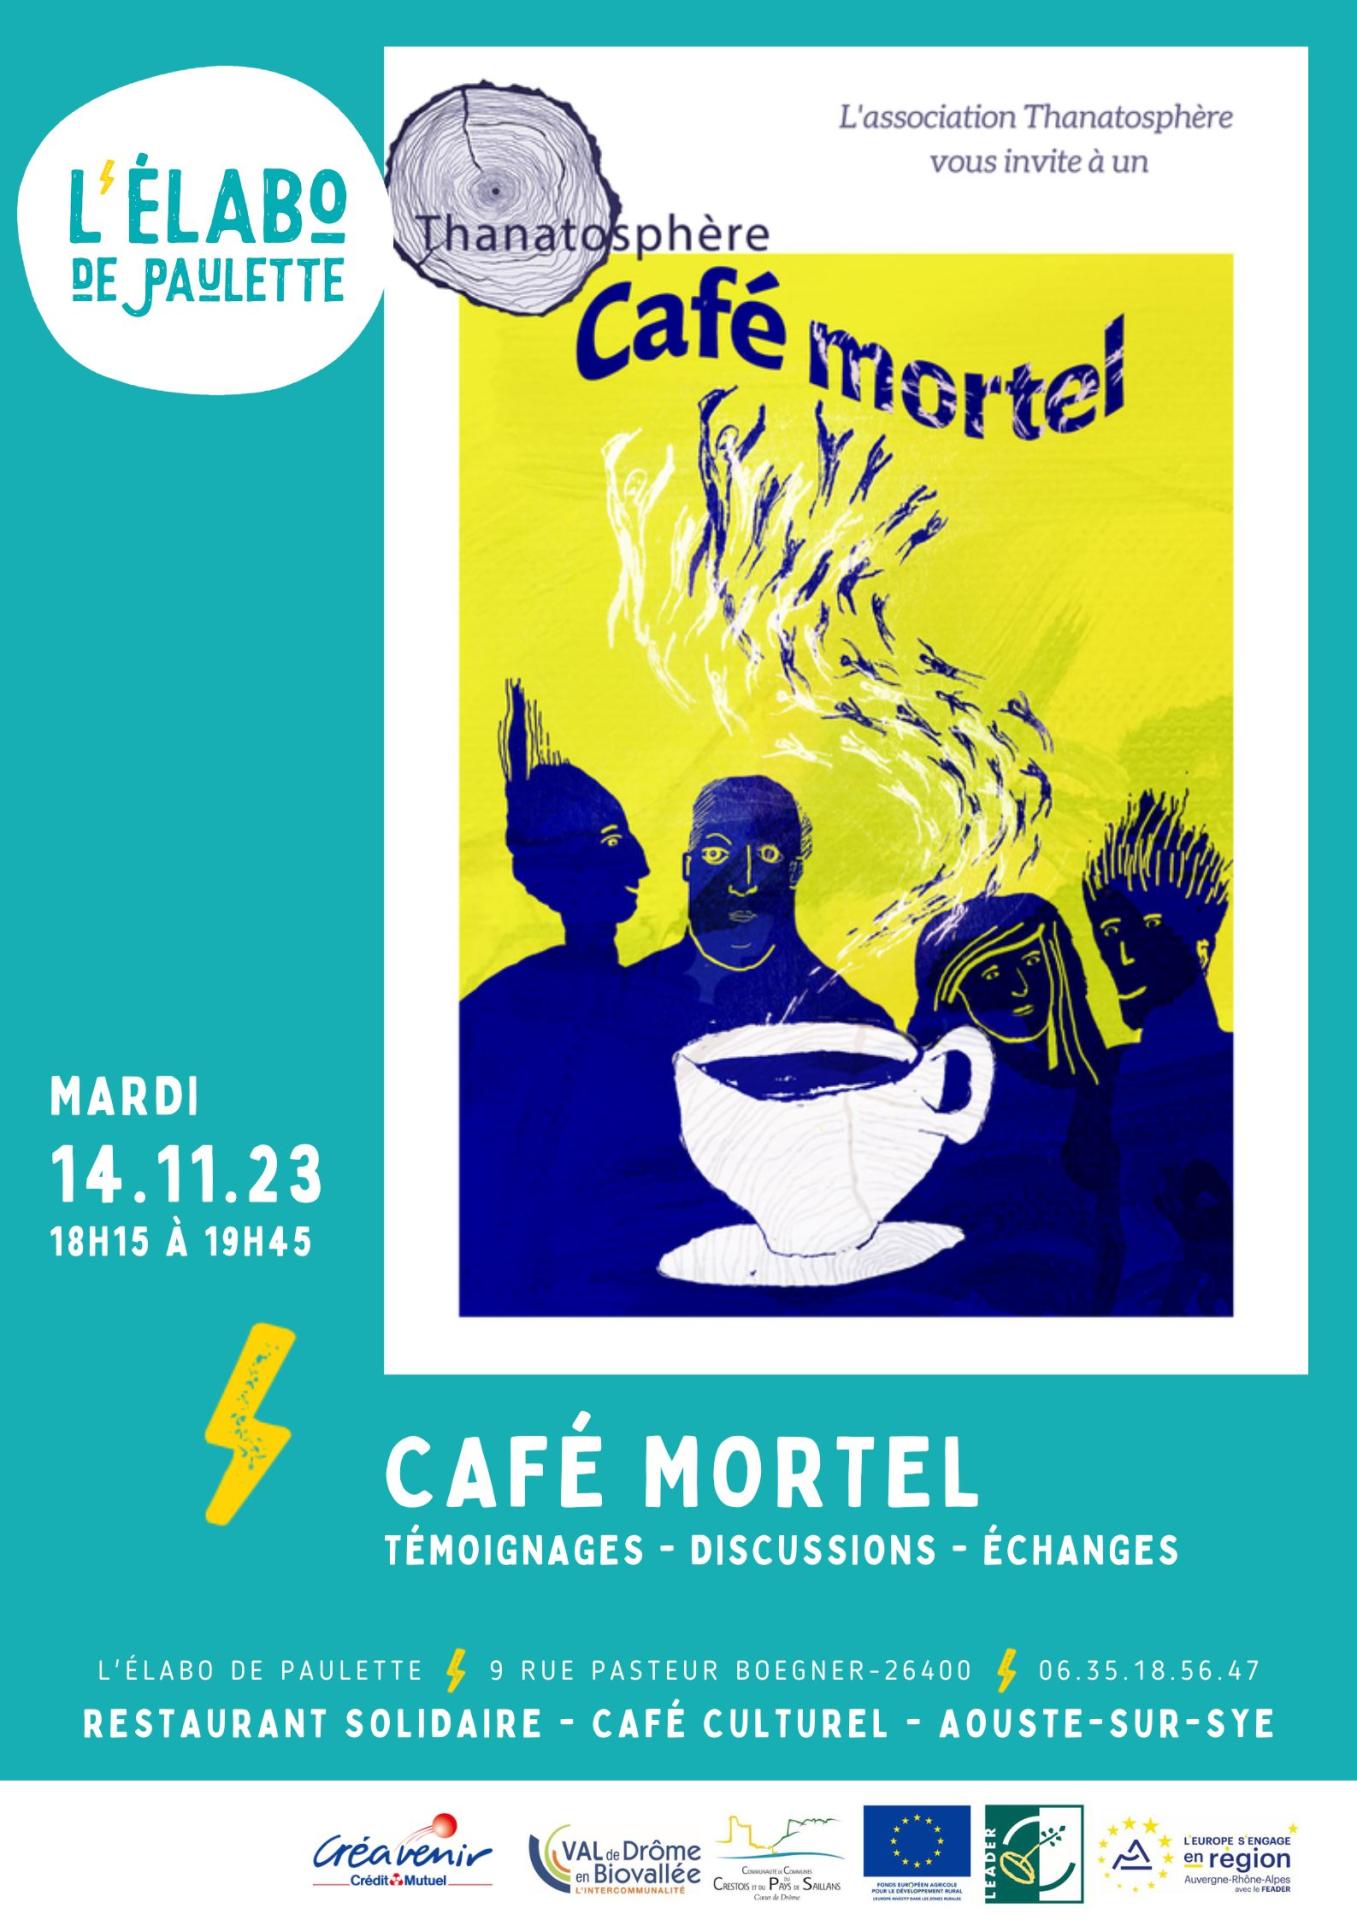 Cafe mortel